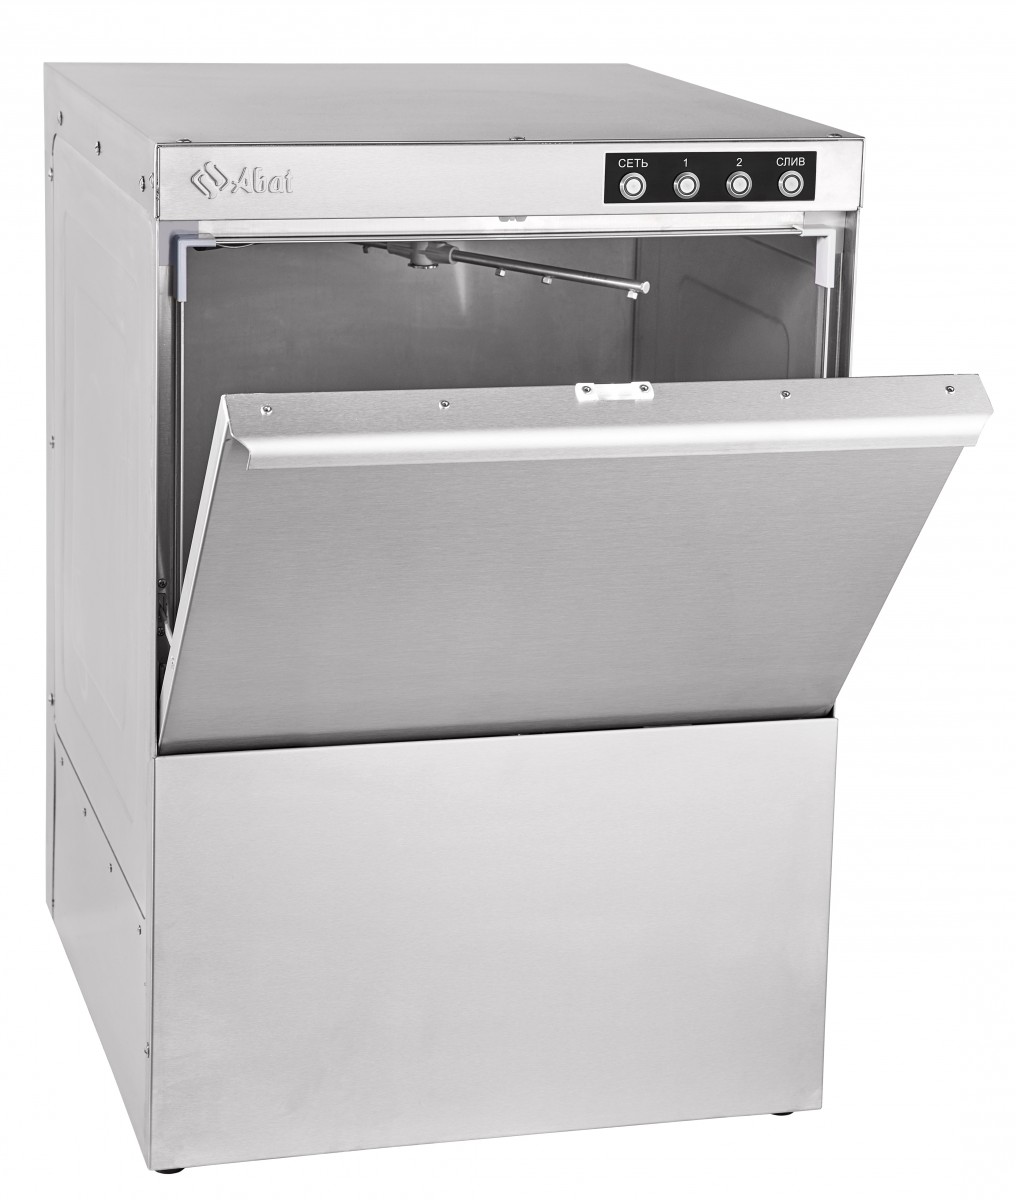 Фронтальная посудомоечная машина Abat МПК-500Ф-01-230 Чебоксары - зображення 1